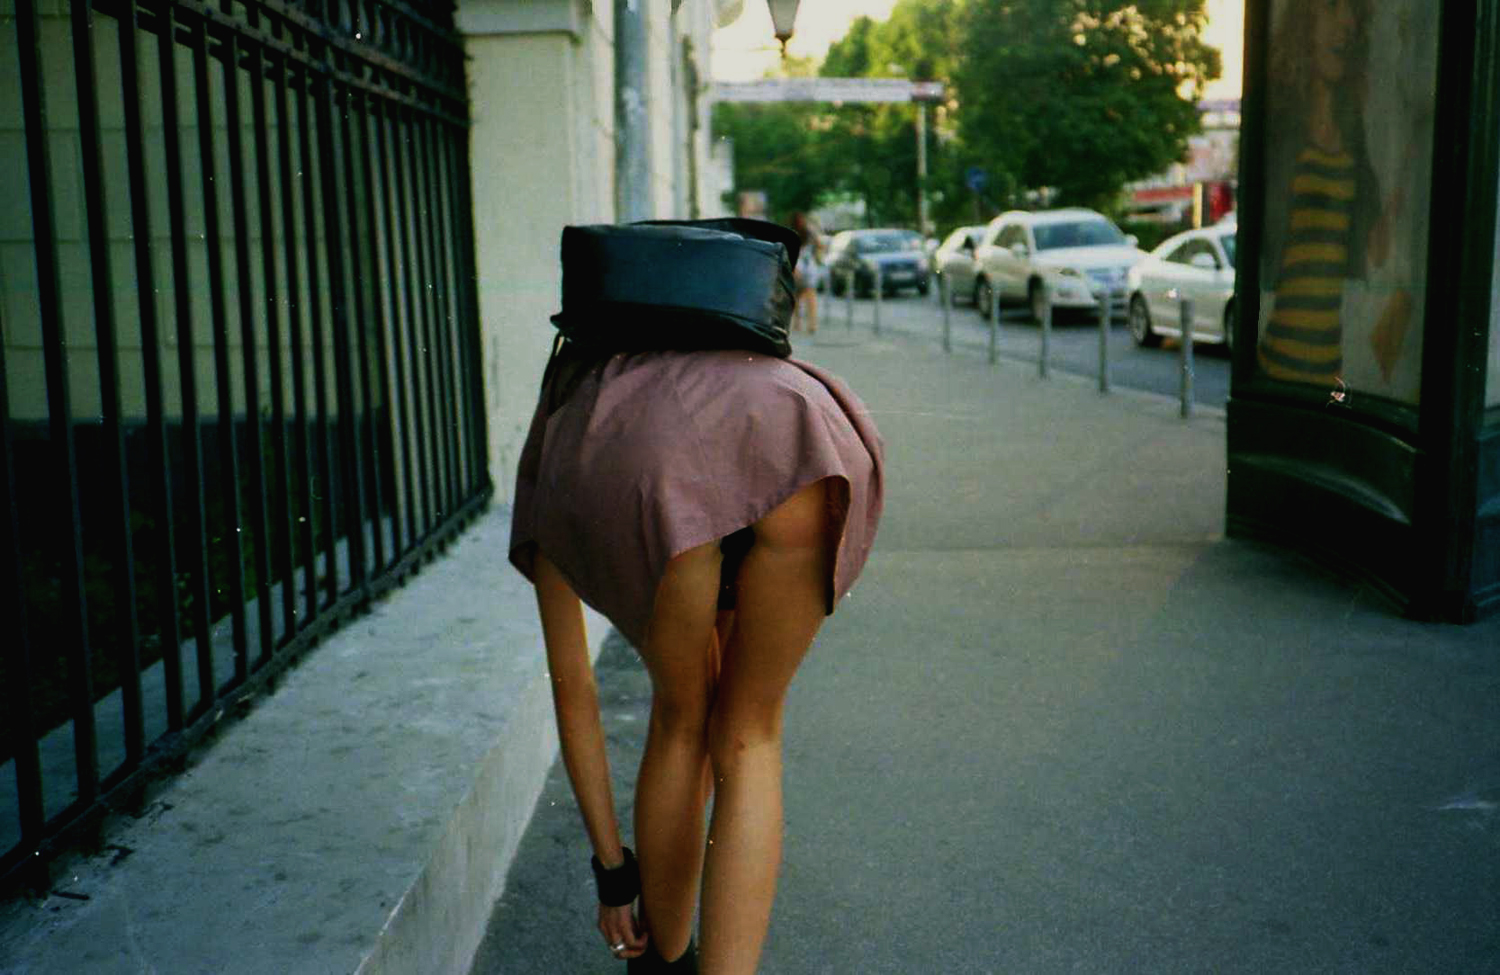 Красотка в короткой юбке прогуливаясь по городу попалась на камеру показав попку